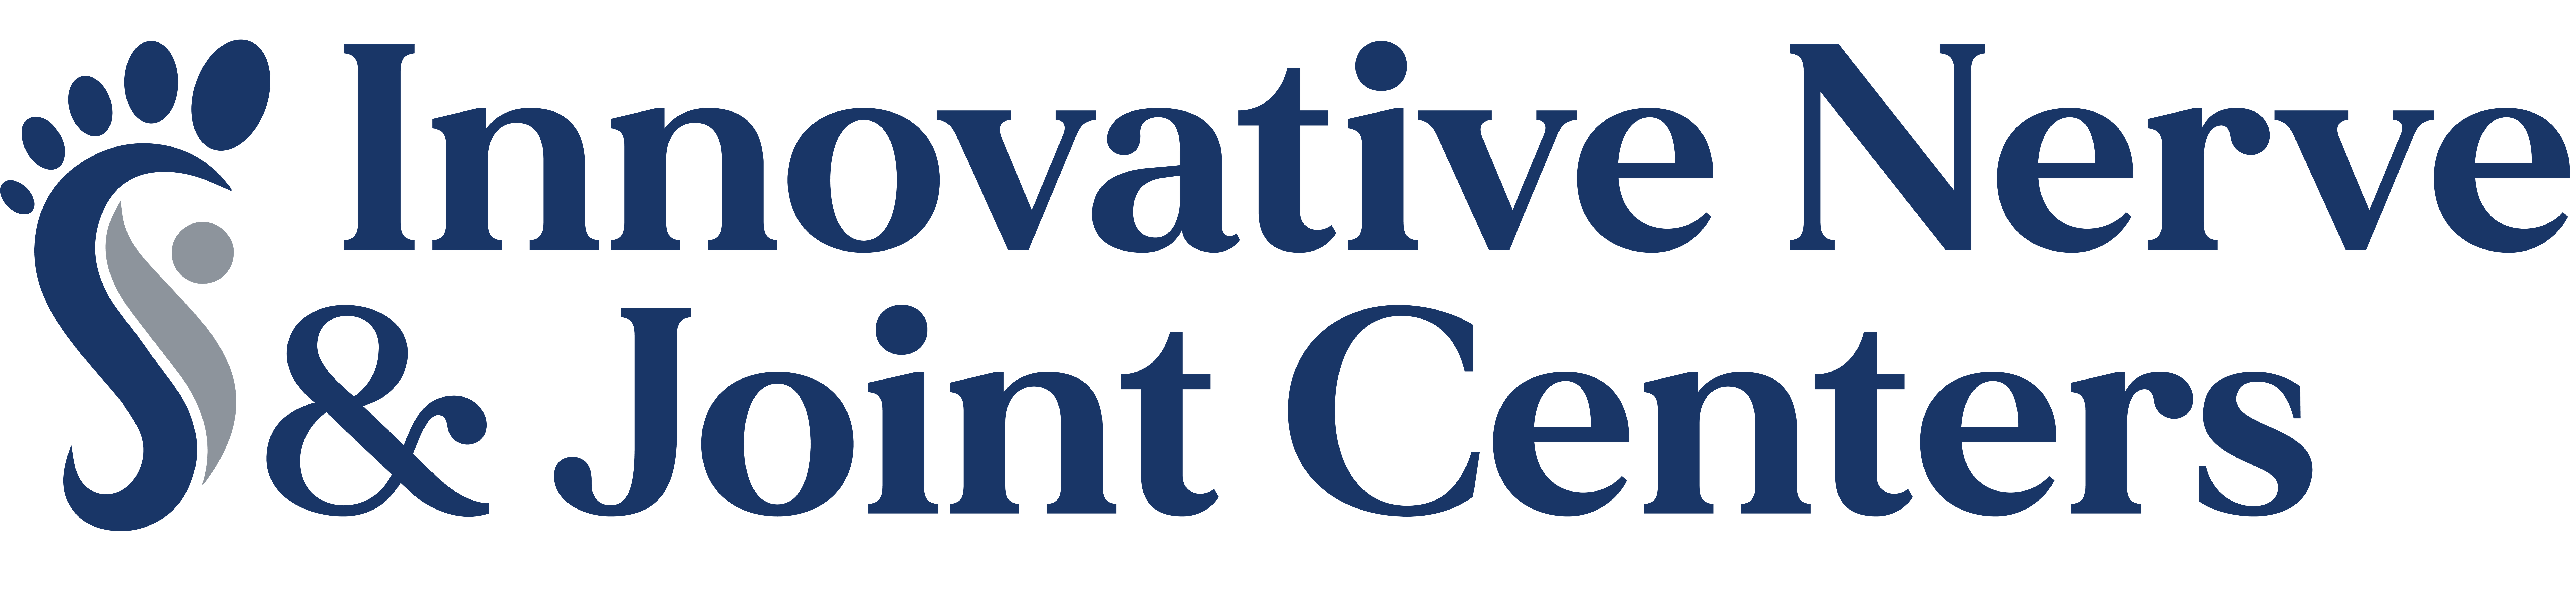 Innovative Nerve & Joint Centers logo